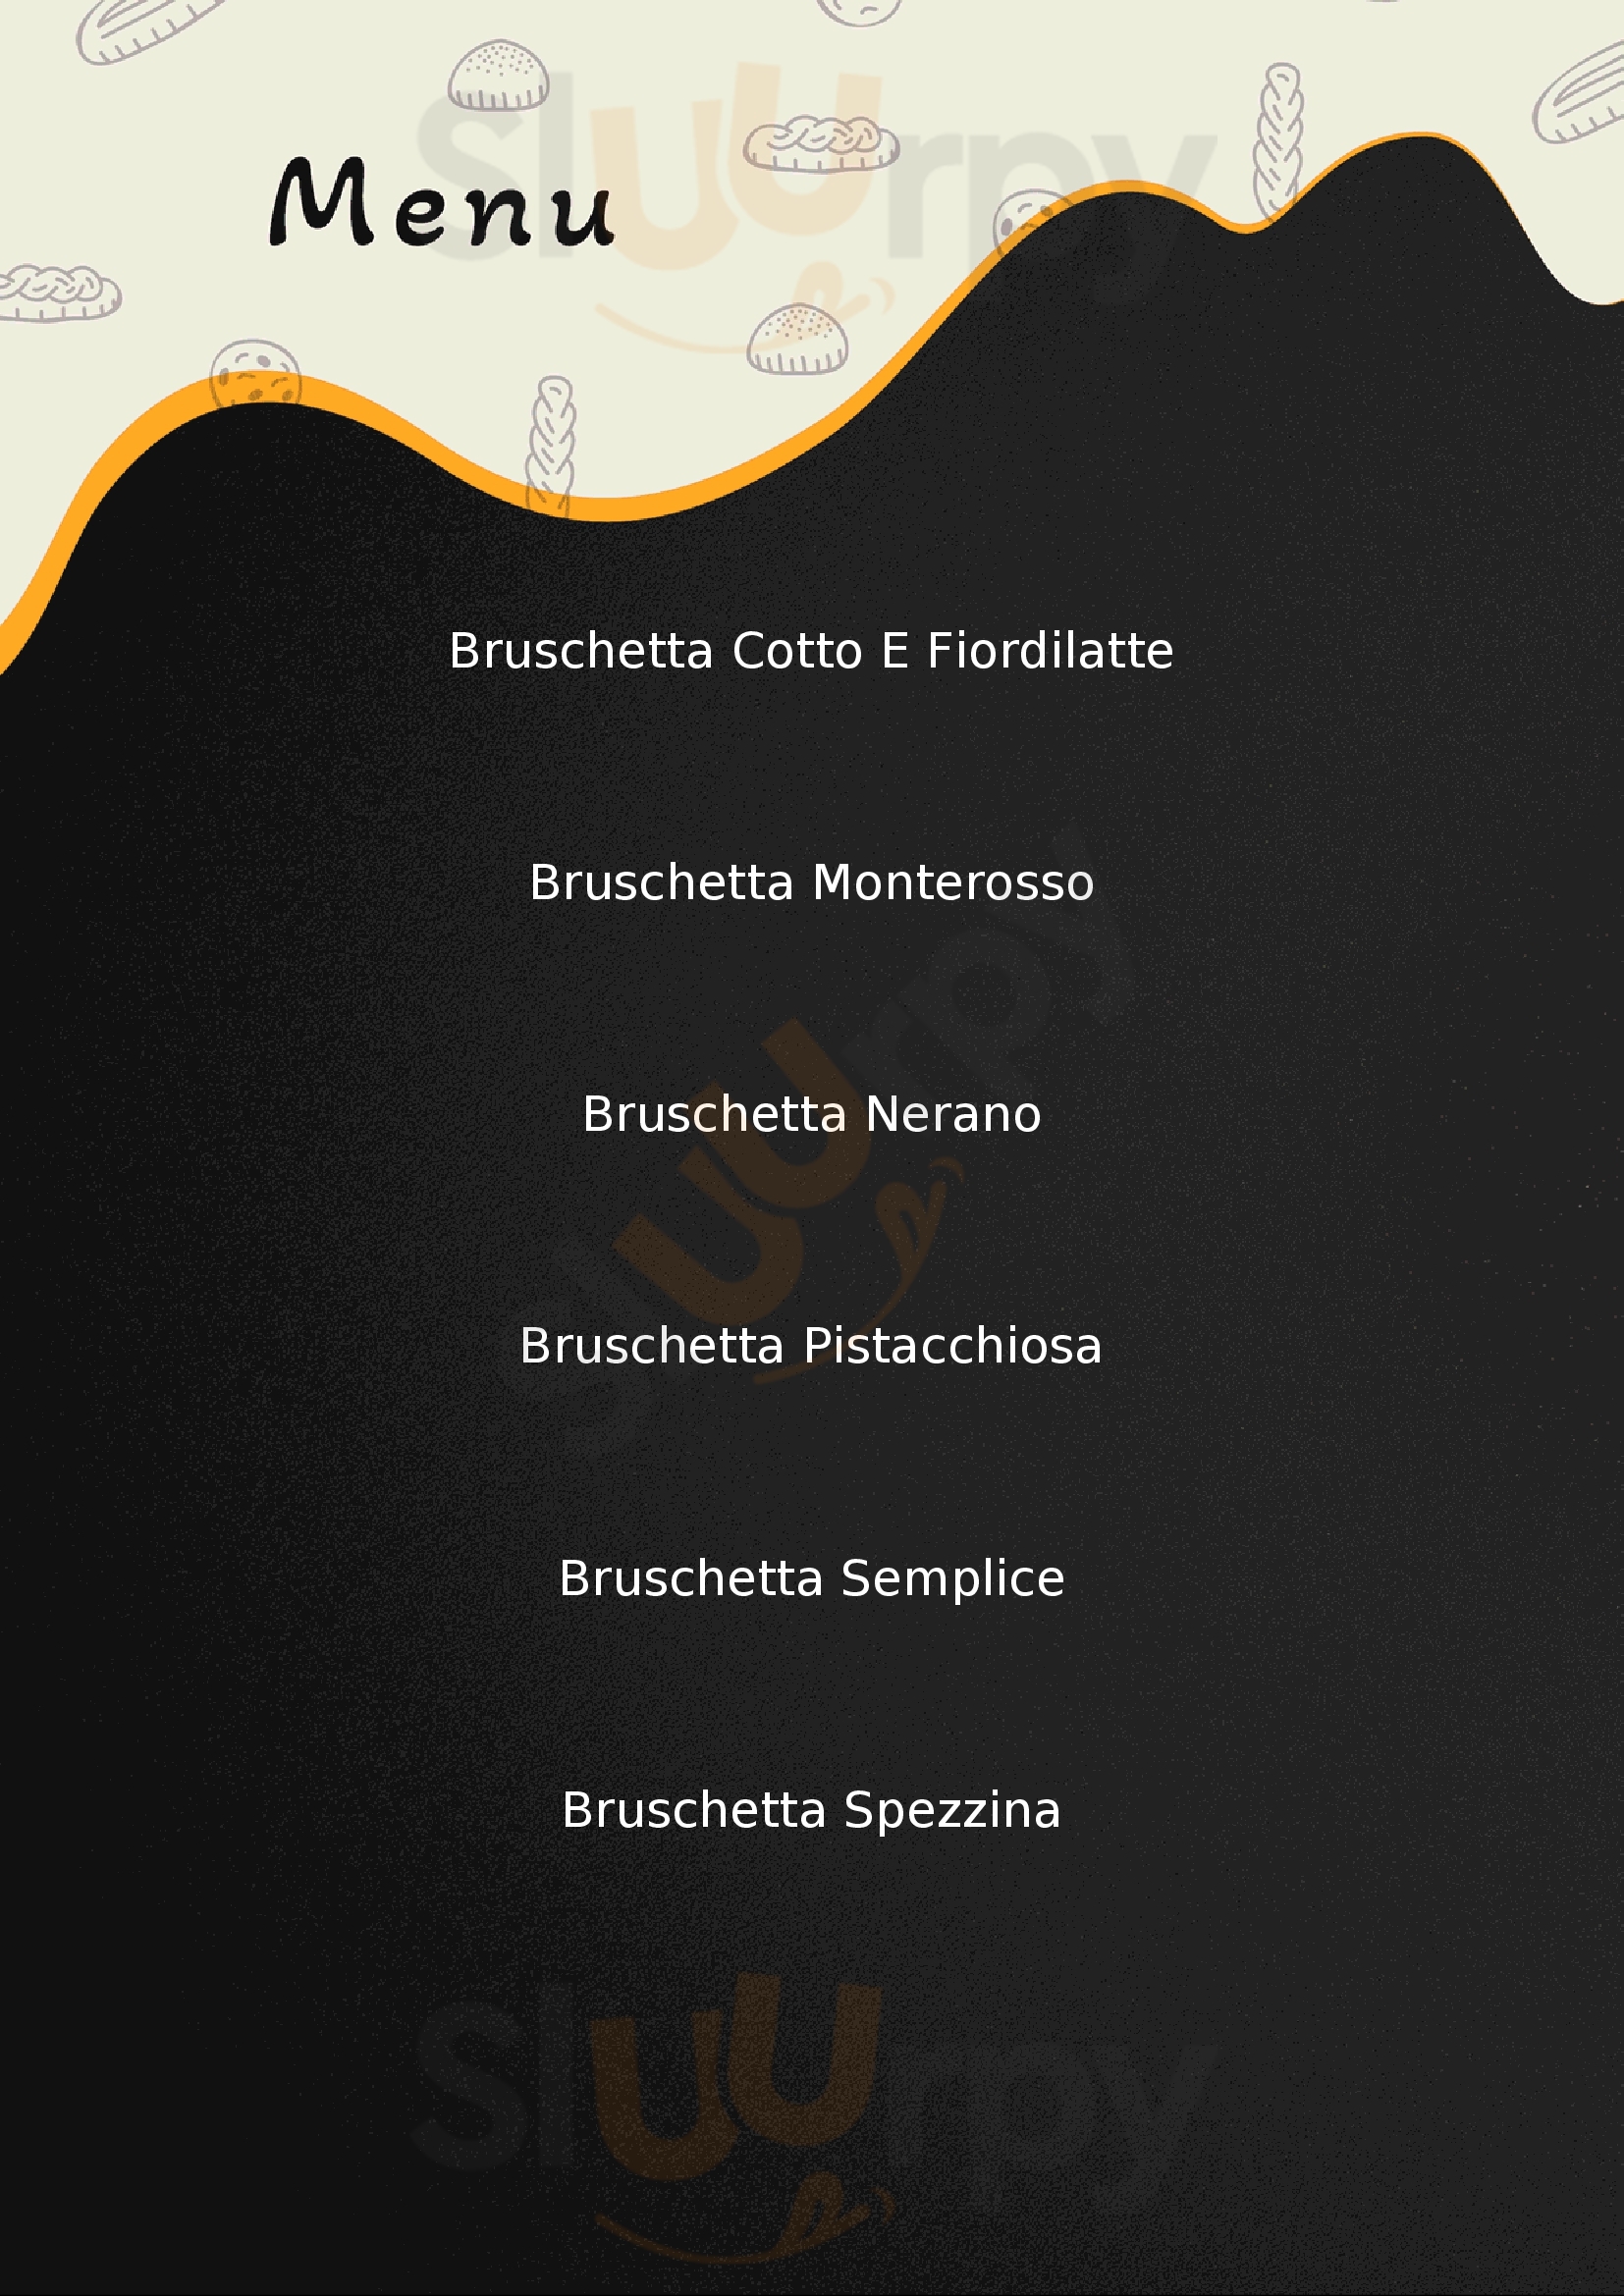 Crazy Bruschetta La Spezia menù 1 pagina